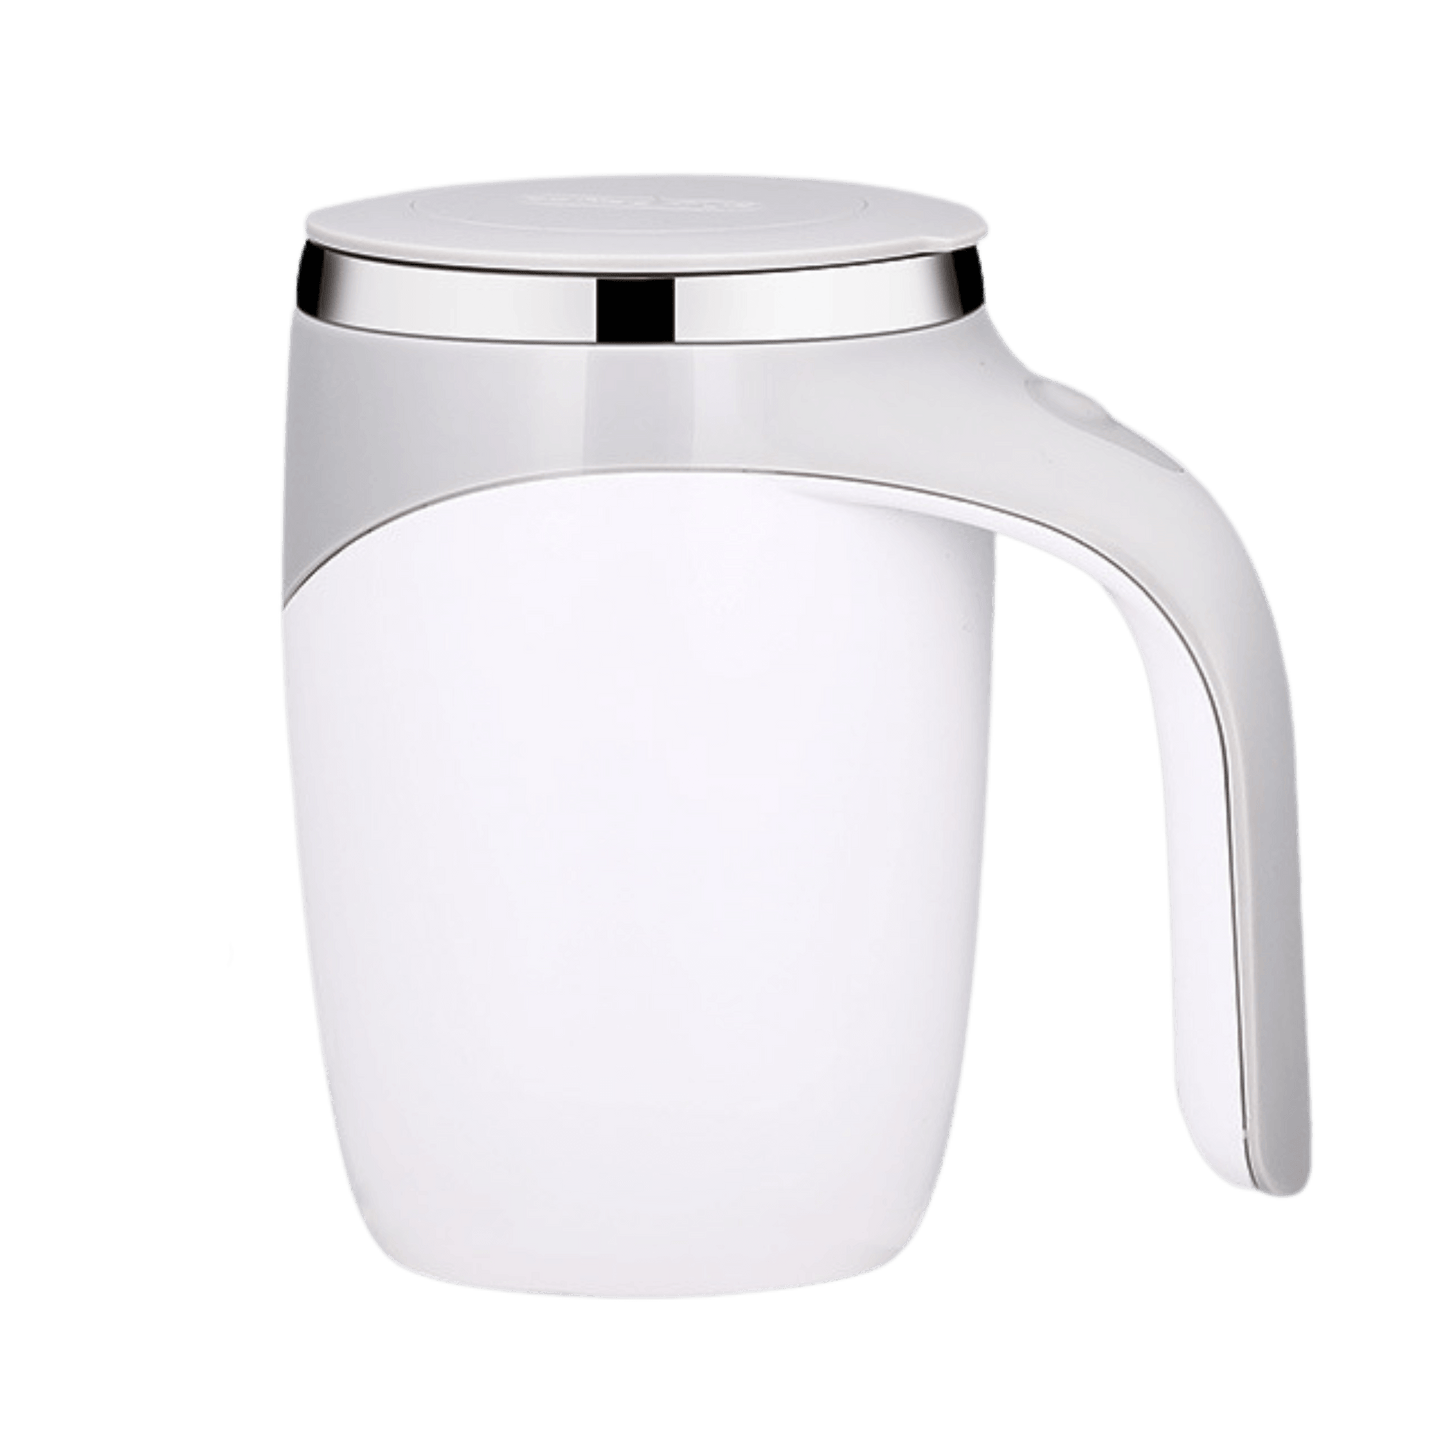 https://retrocoaster.com/cdn/shop/products/retro-coaster-mixer-cup-silver.png?v=1677041380&width=1445